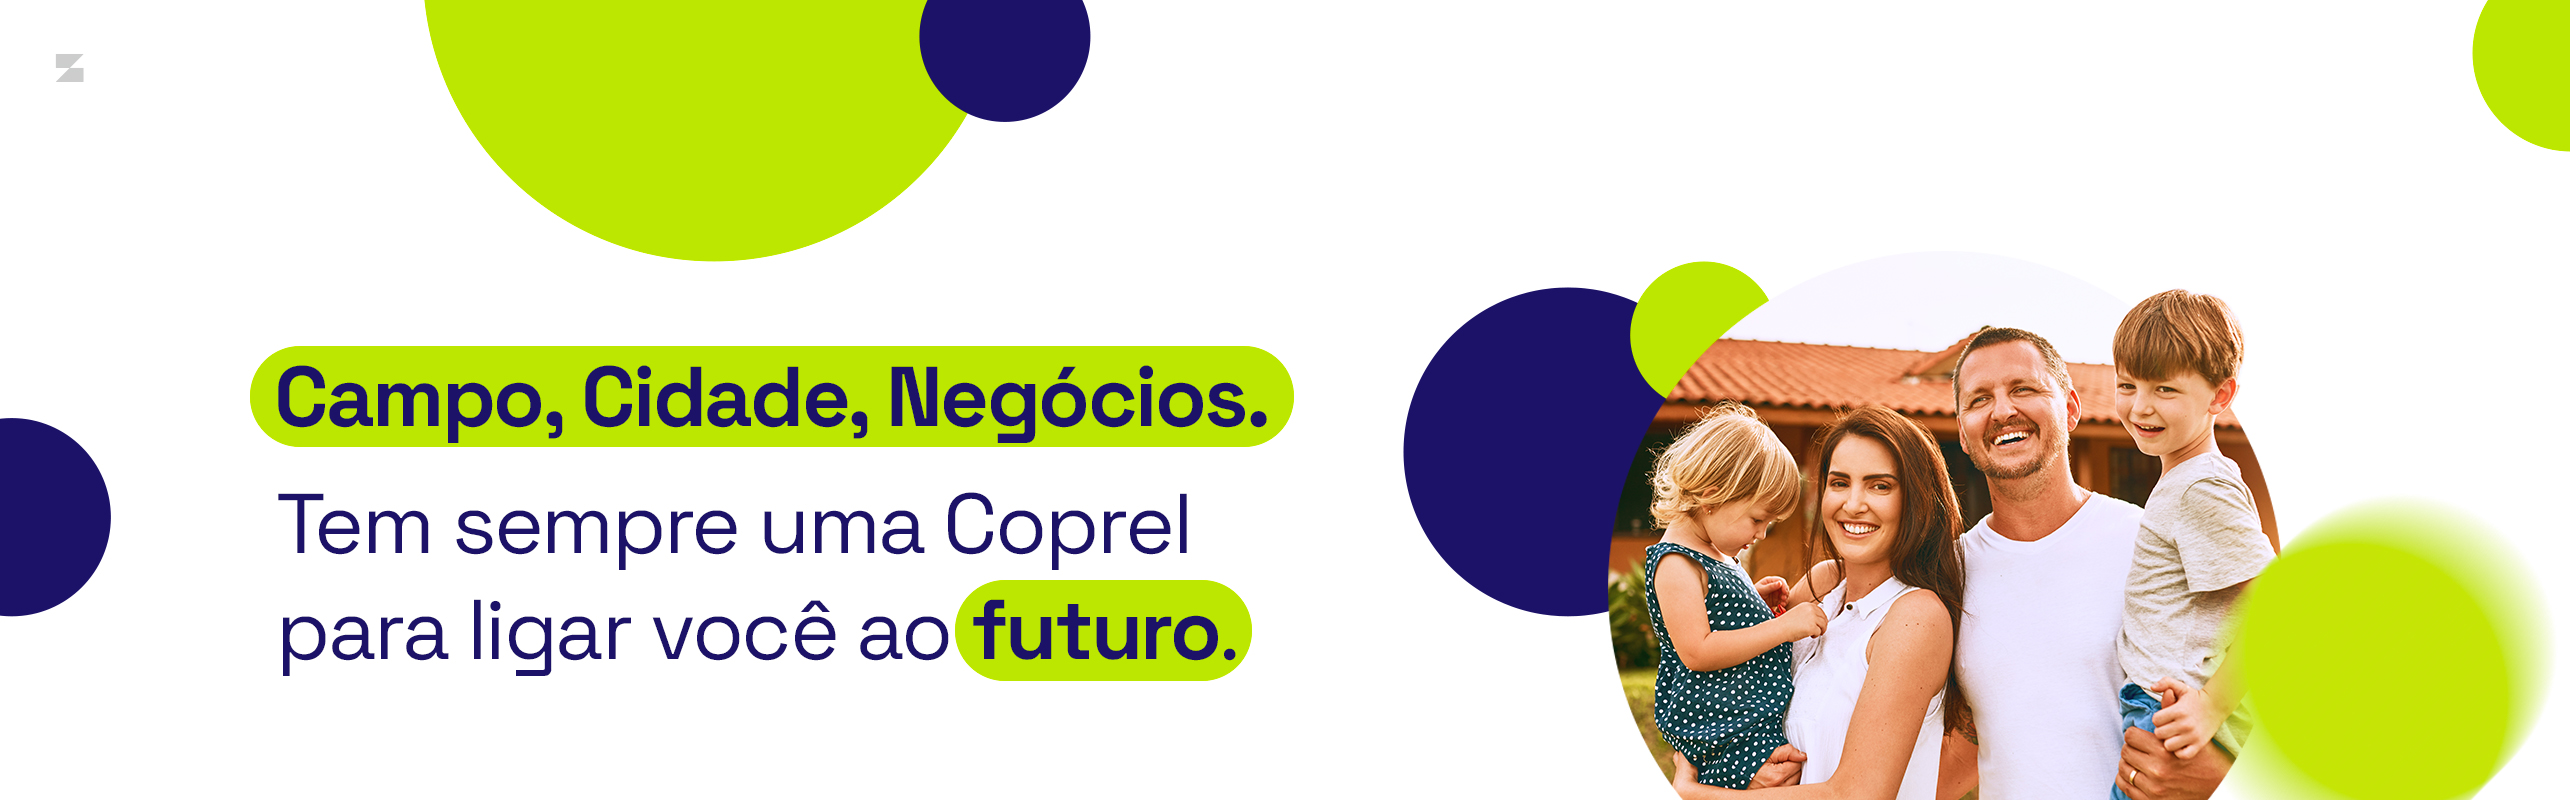 coprel | banner institucional